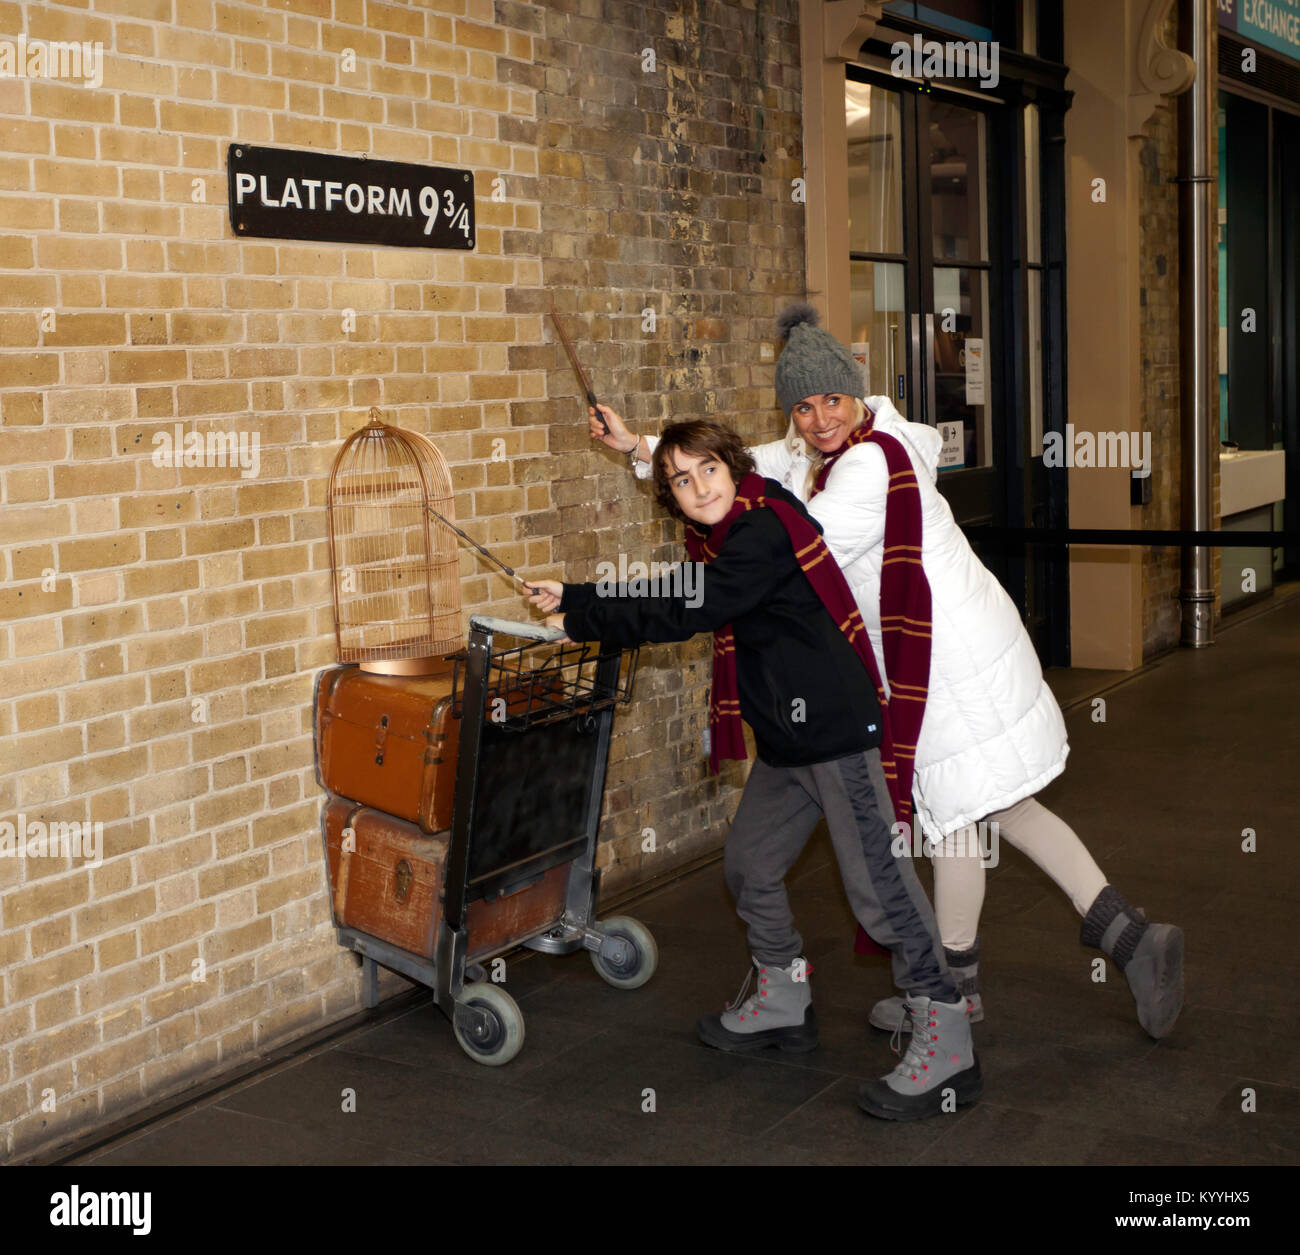 La pose avec des fans de Harry Potter baguettes et foulards de Gryffondor par une réplique du chariot entrer dans la plate-forme 9 3/4 à la gare de Kings Cross, London Banque D'Images